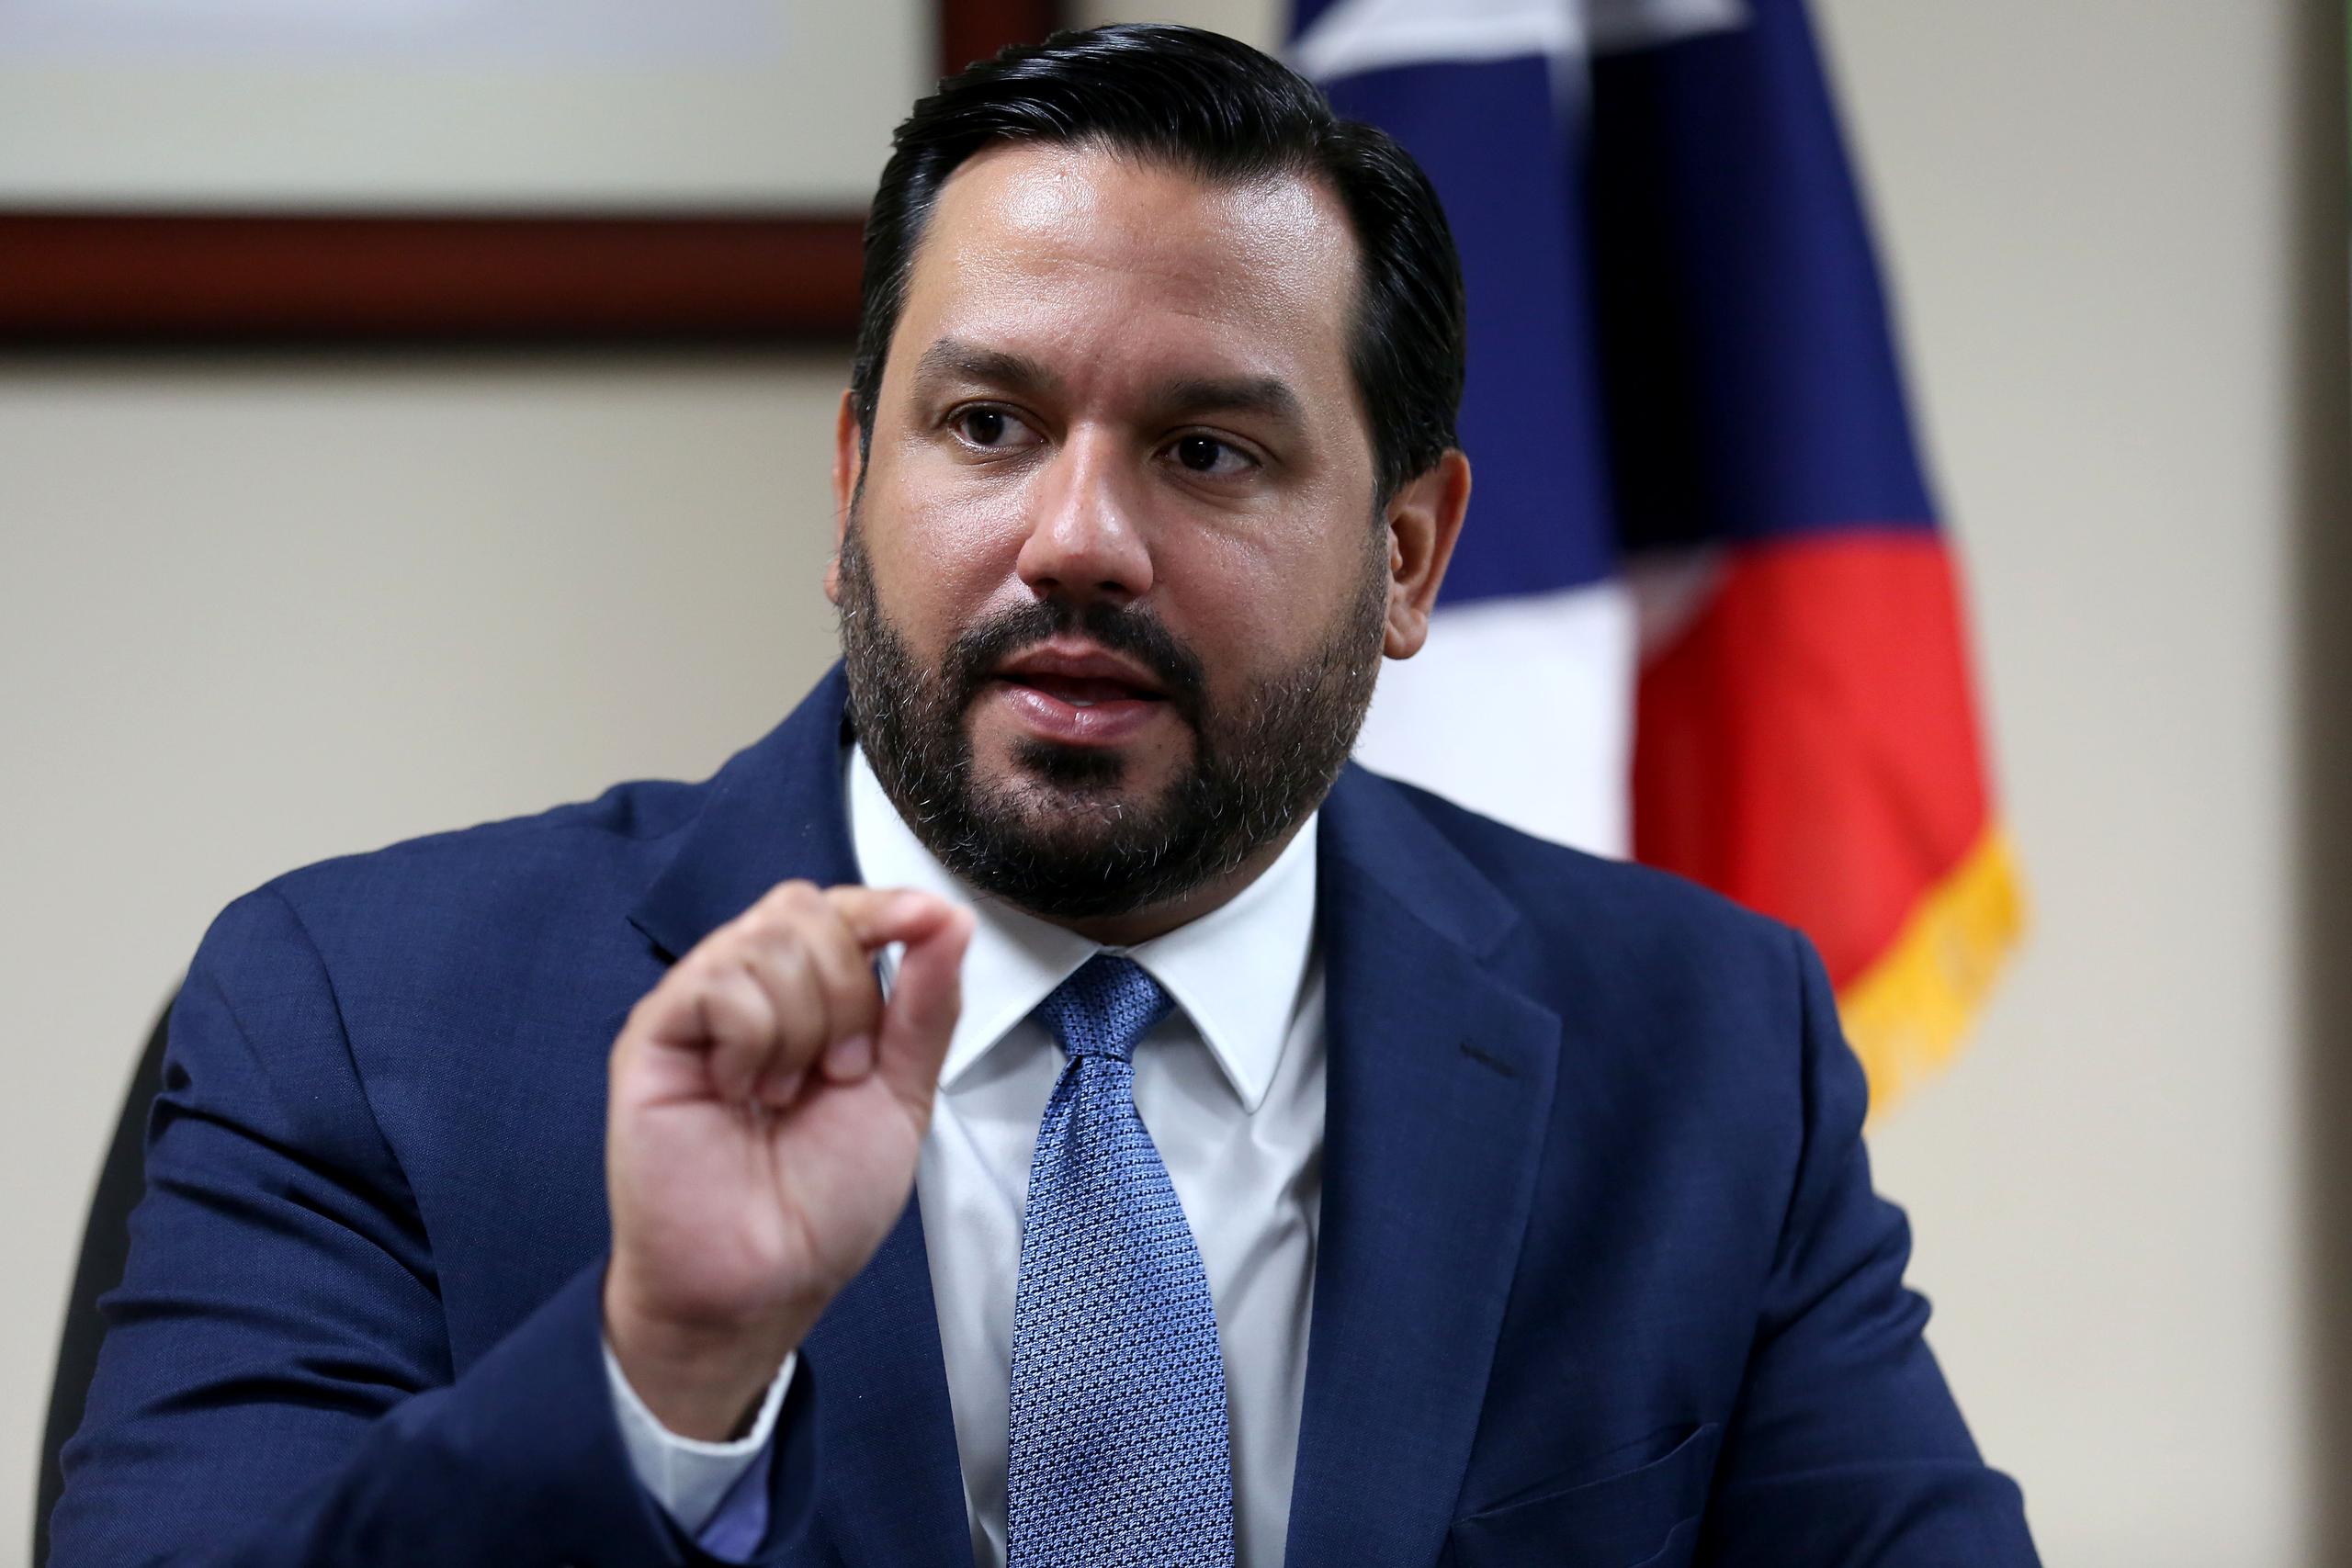 El secretario del Departamento de la Vivienda, William Rodríguez Rodríguez, sostuvo que ya se ha hecho público que el Departamento de Energía federal tendrá $1,000 millones para un programa con el que espera impactar a unas 40,000 familias en Puerto Rico.